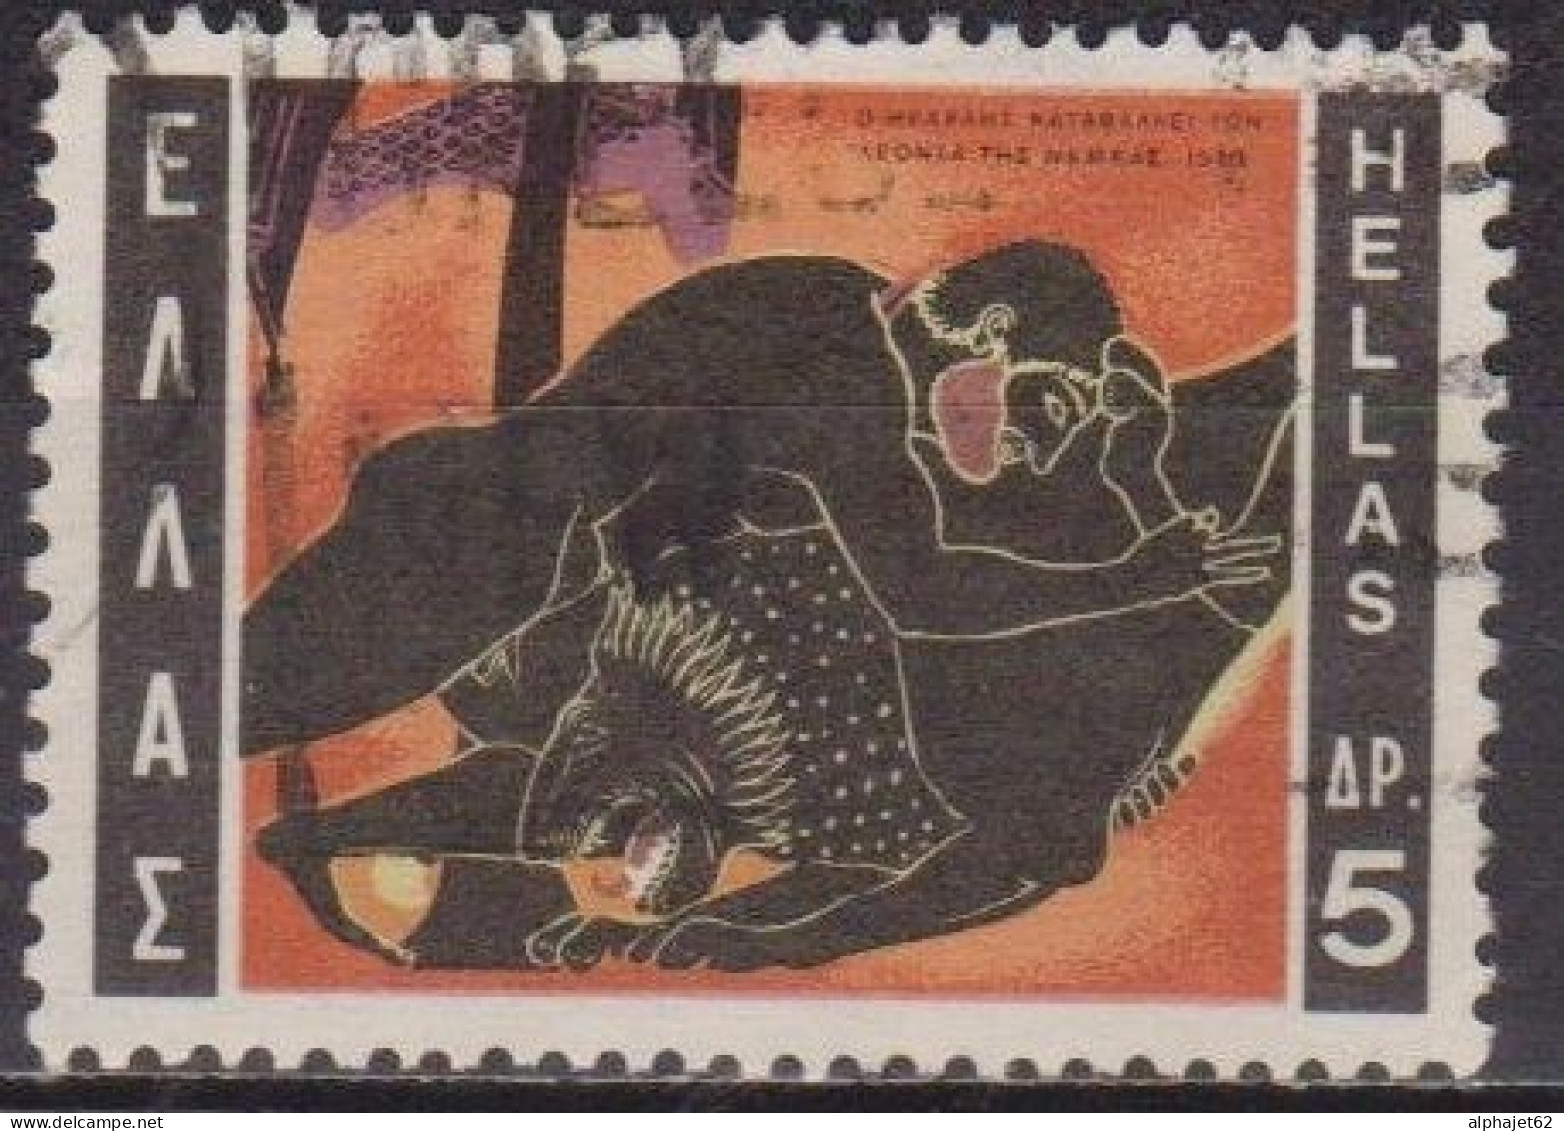 Mythologie - 12 Travaux D'Hercule - GRECE - Le Lion De Némée - N° 1015 - 1970 - Usados